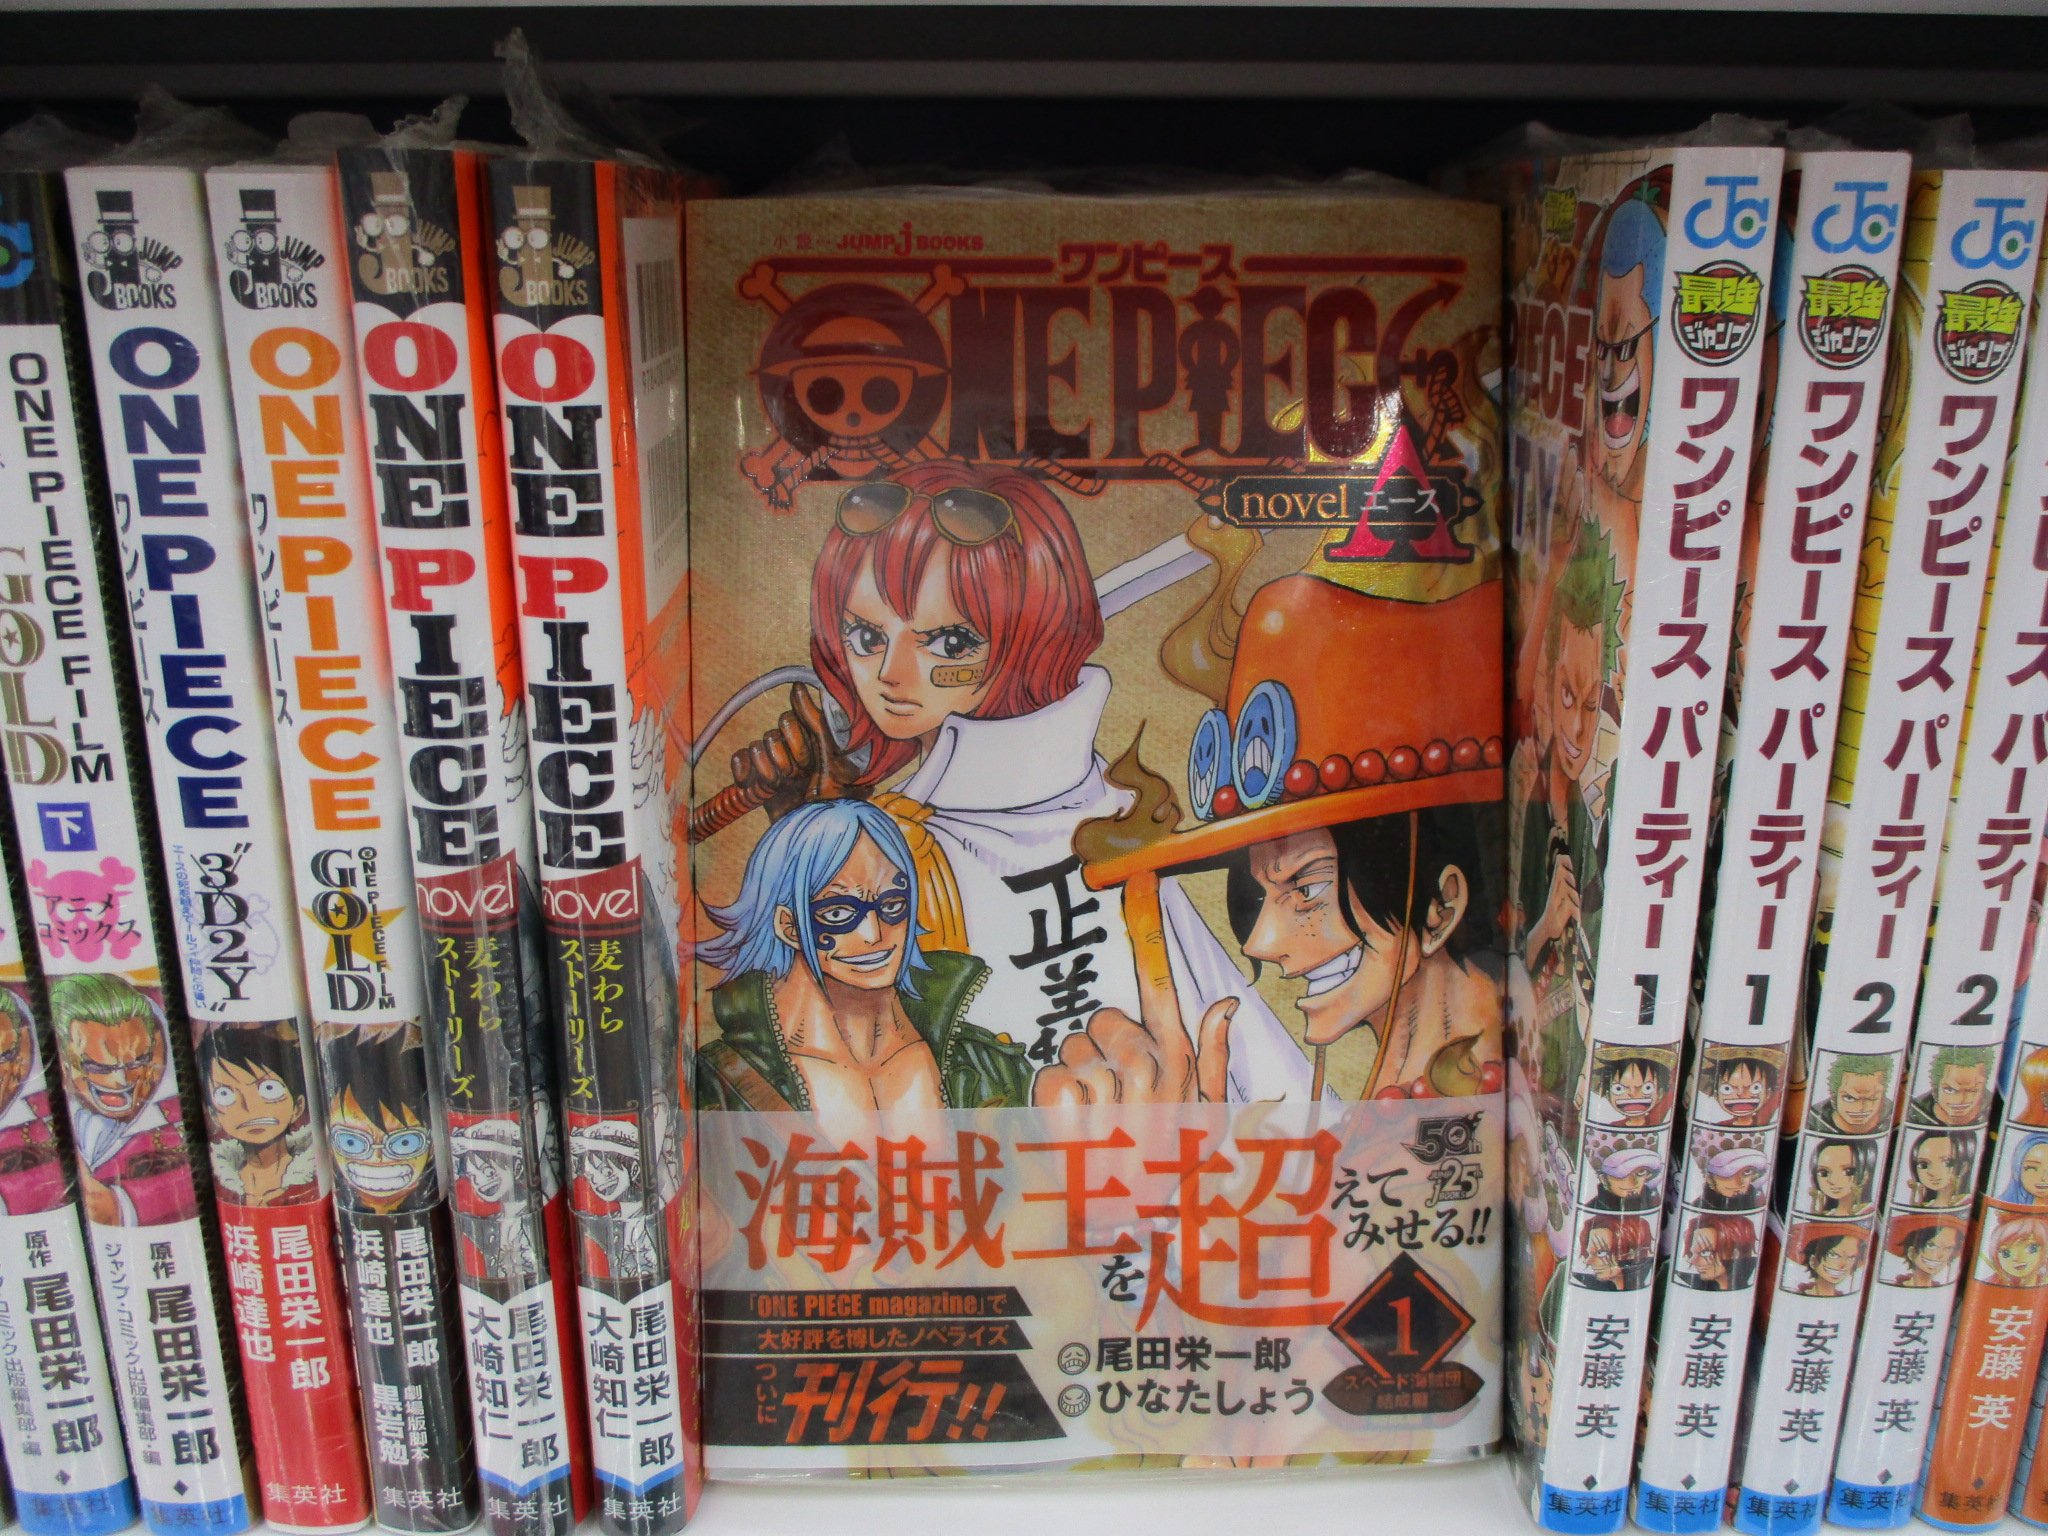 アニメイト池袋本店 書籍情報 Jumpjbooks One Piece Novel ａ１ スペード海賊団結成篇 が若干数再入荷致しました 連載周年を記念して刊行された One Piece Magazine にて大人気を博した One Piece のエース を描いた初の長編小説 当店でも好評